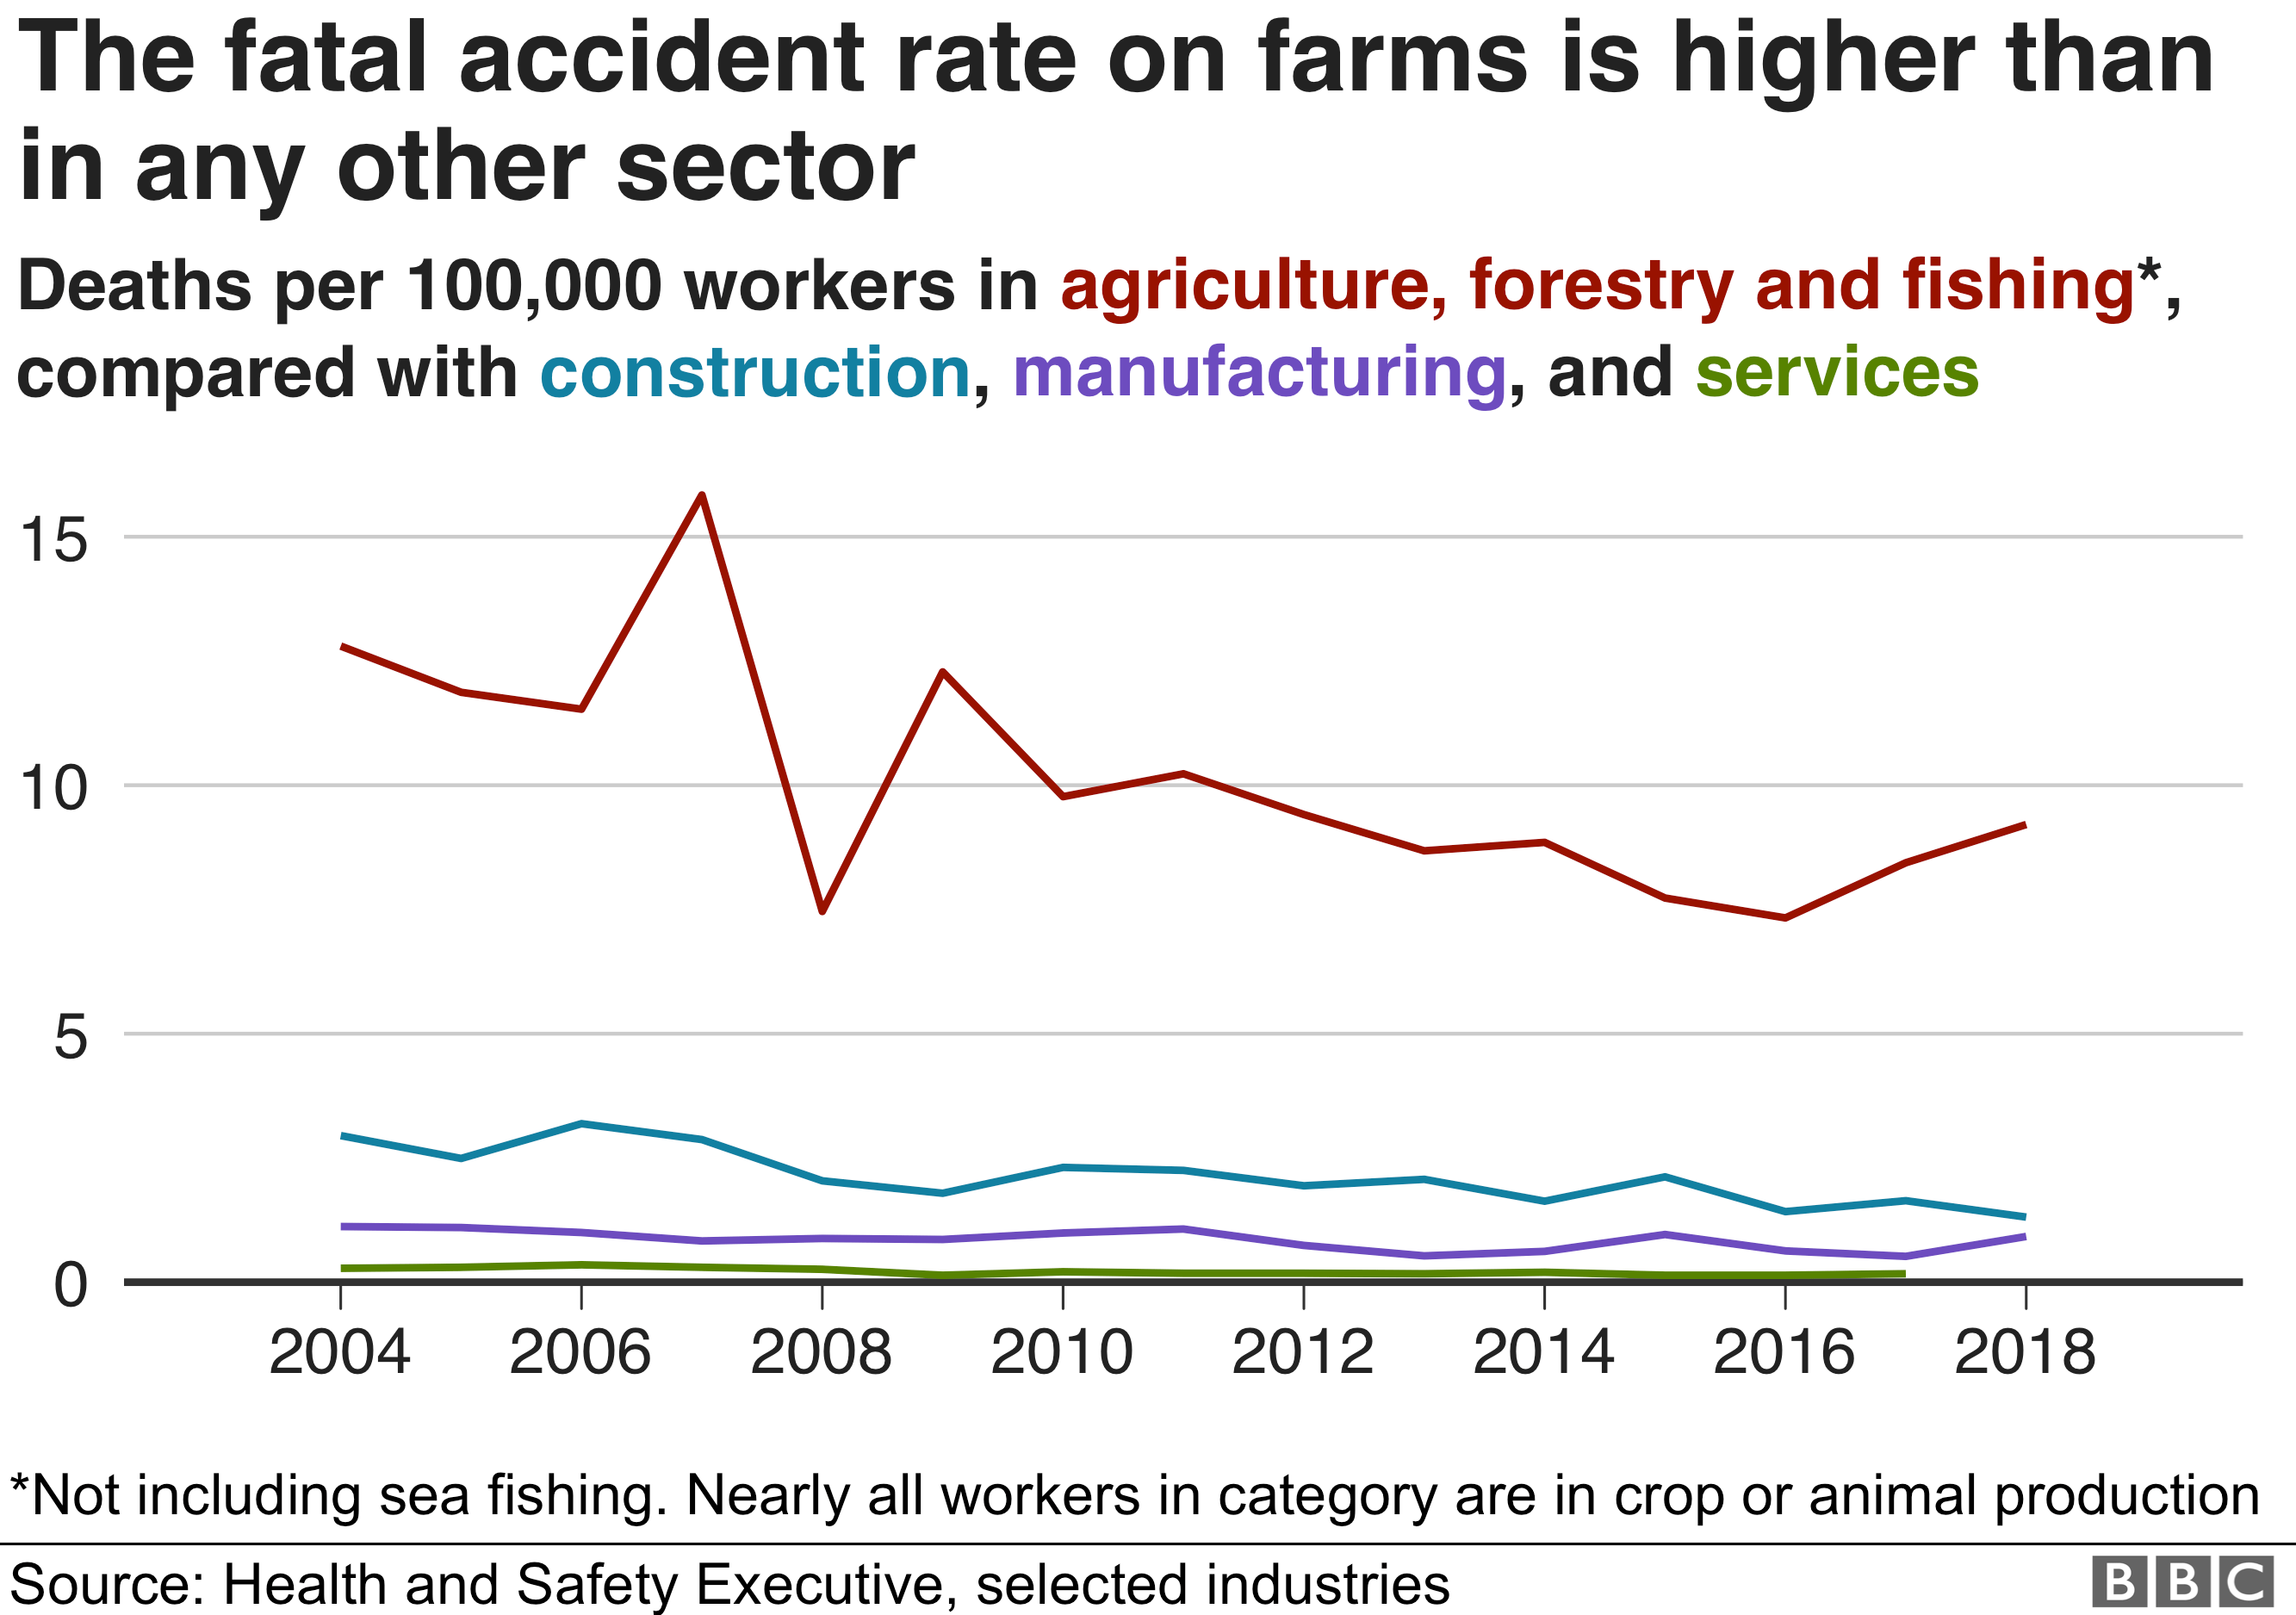 График временного ряда, показывающий, что количество несчастных случаев со смертельным исходом на фермах выше, чем в любом другом секторе, и примерно в четыре раза выше, чем в строительстве